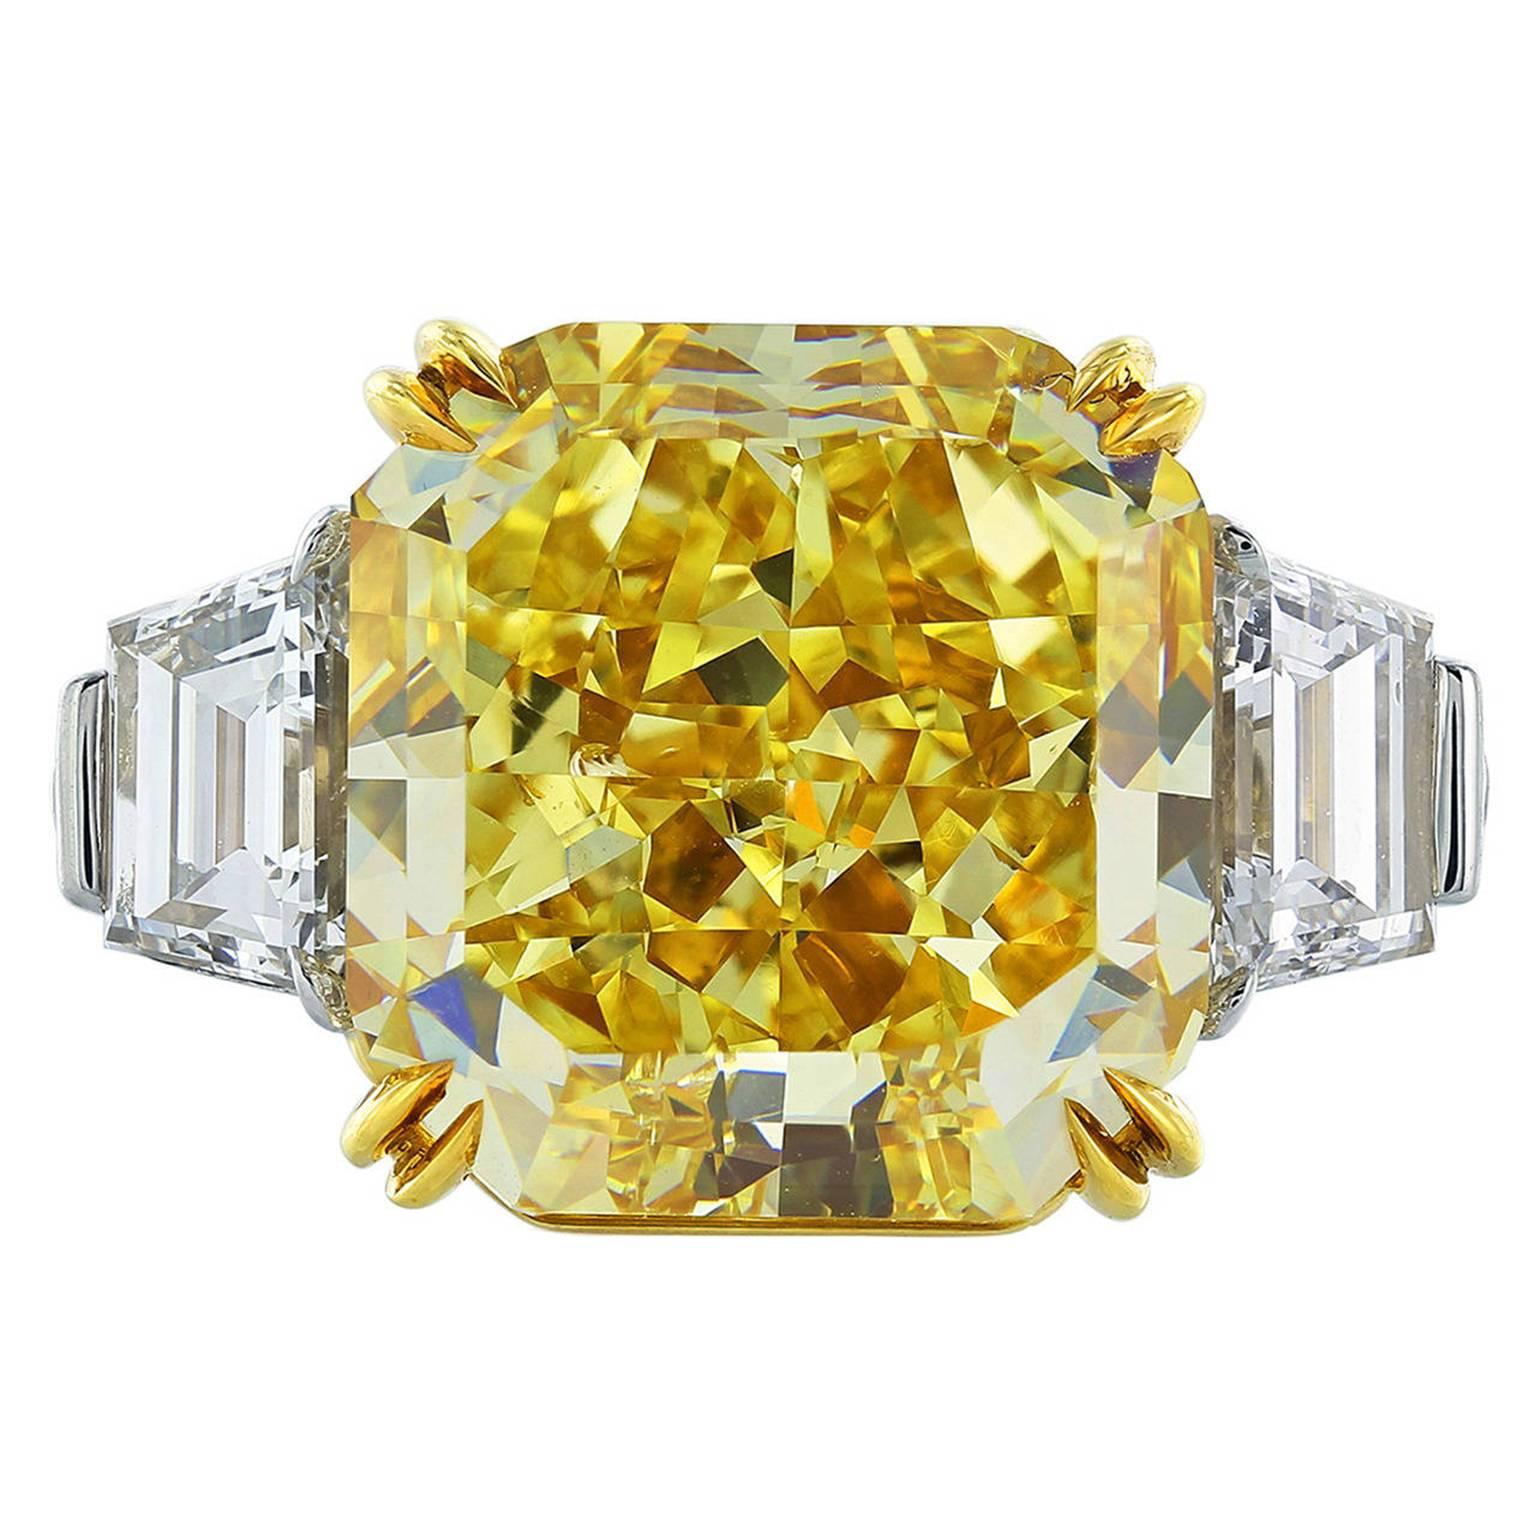 Magnifique bague en diamant jaune intense fantaisie de 10,18 carats sans défaut interne